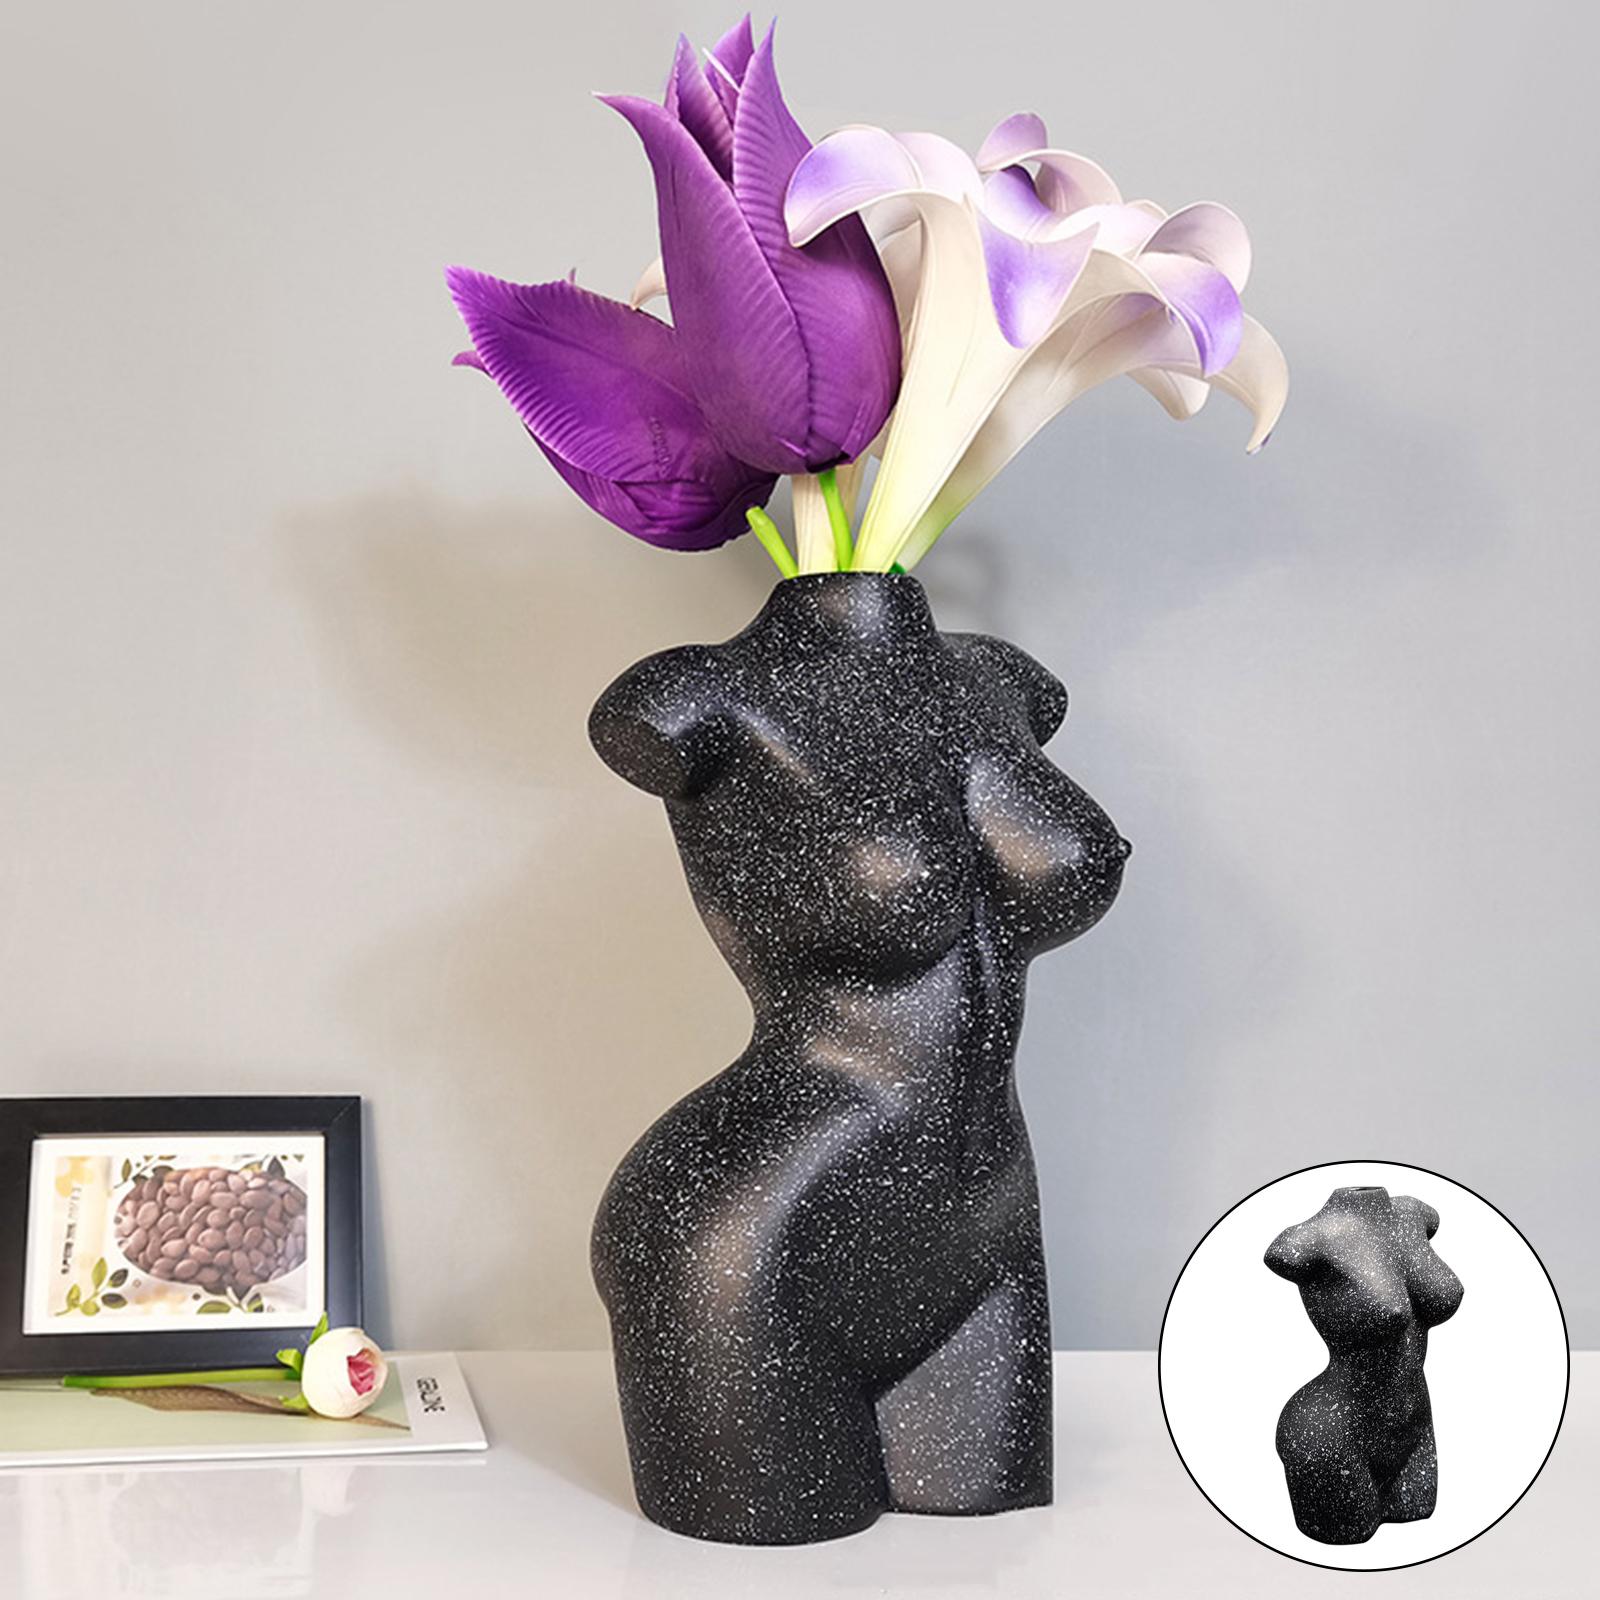 Female Body Vase Resin Flower Pot Women Statues Desktop Ornament Decor